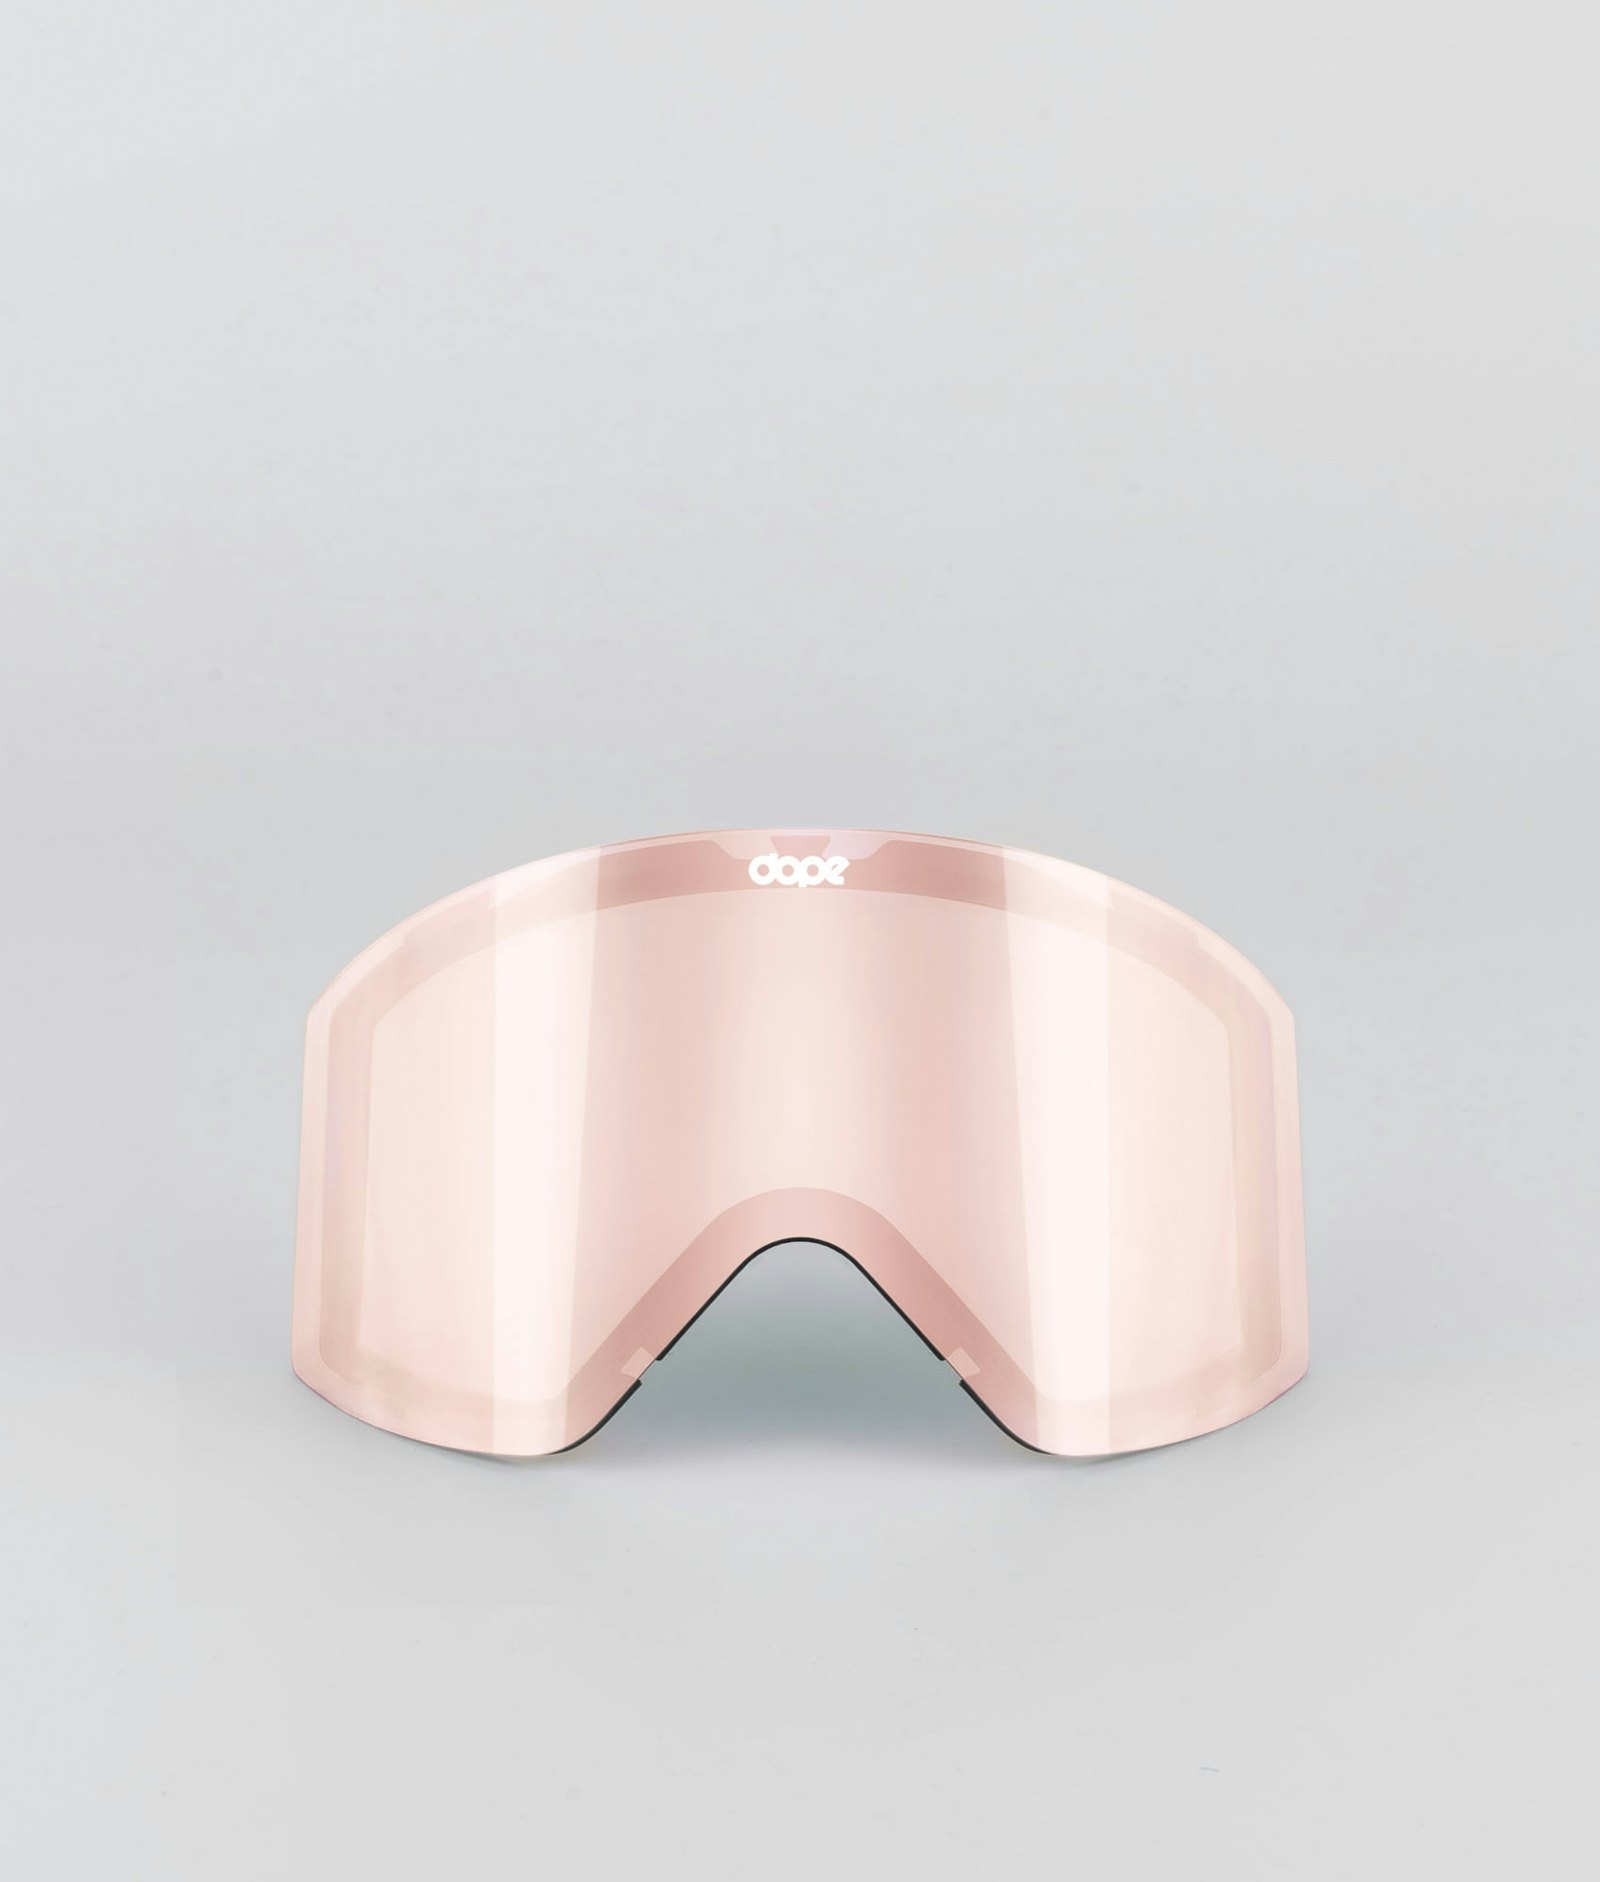 Dope Sight 2020 Goggle Lens Ecran de remplacement pour masque de ski Champagne